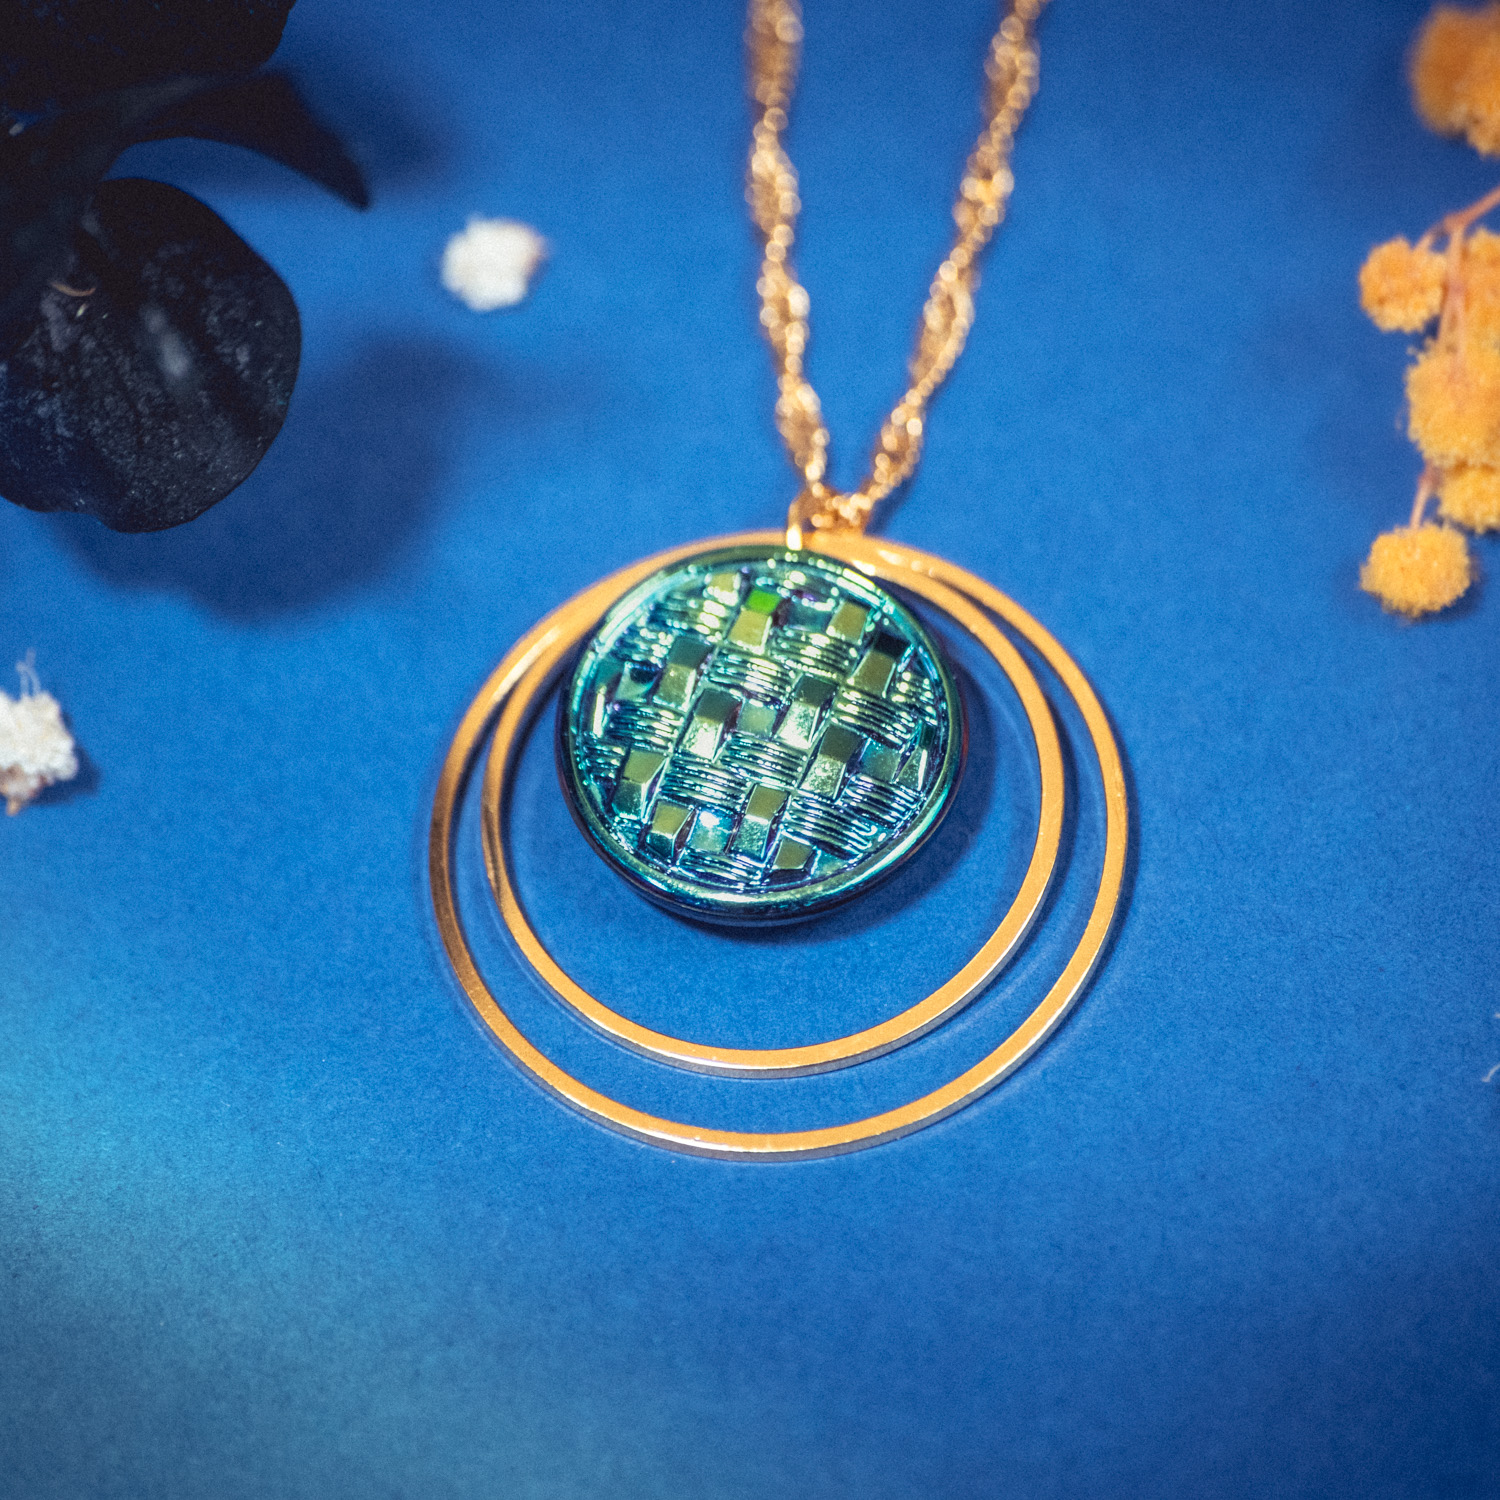 Assuna – Collier Lunare Cécile bleu sirène – bouton ancien 1940 – collier d’inspiration vintage en forme de croissant de lune